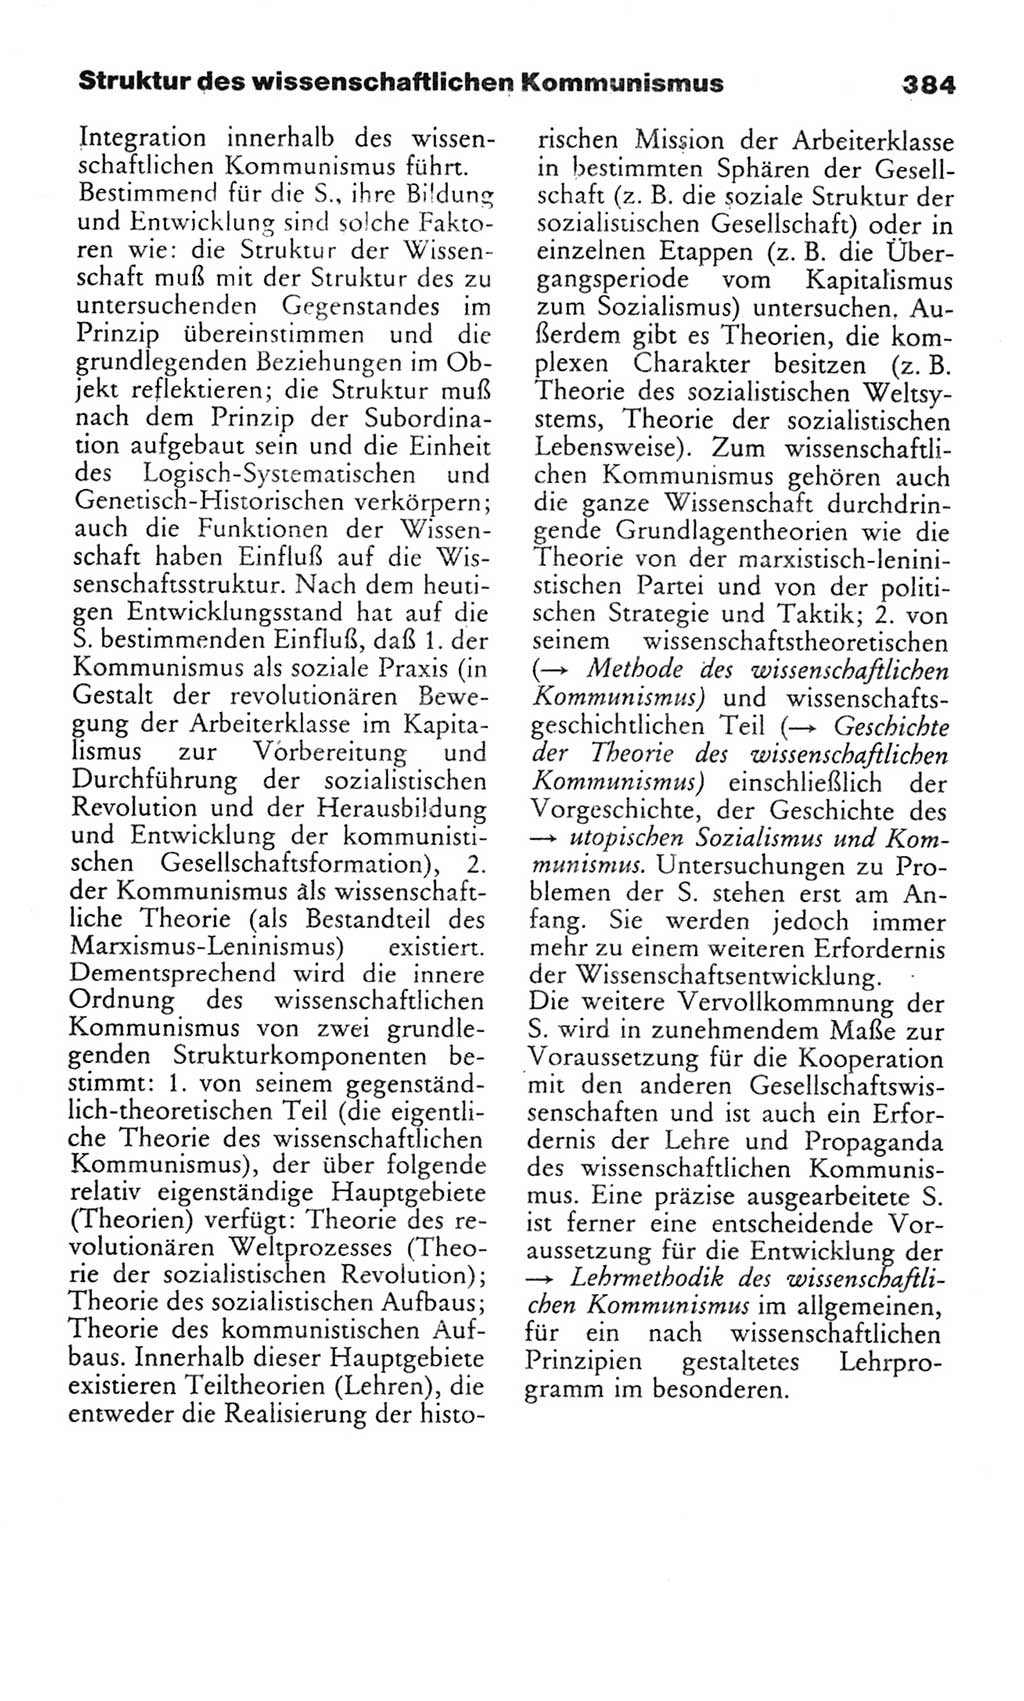 Wörterbuch des wissenschaftlichen Kommunismus [Deutsche Demokratische Republik (DDR)] 1982, Seite 384 (Wb. wiss. Komm. DDR 1982, S. 384)